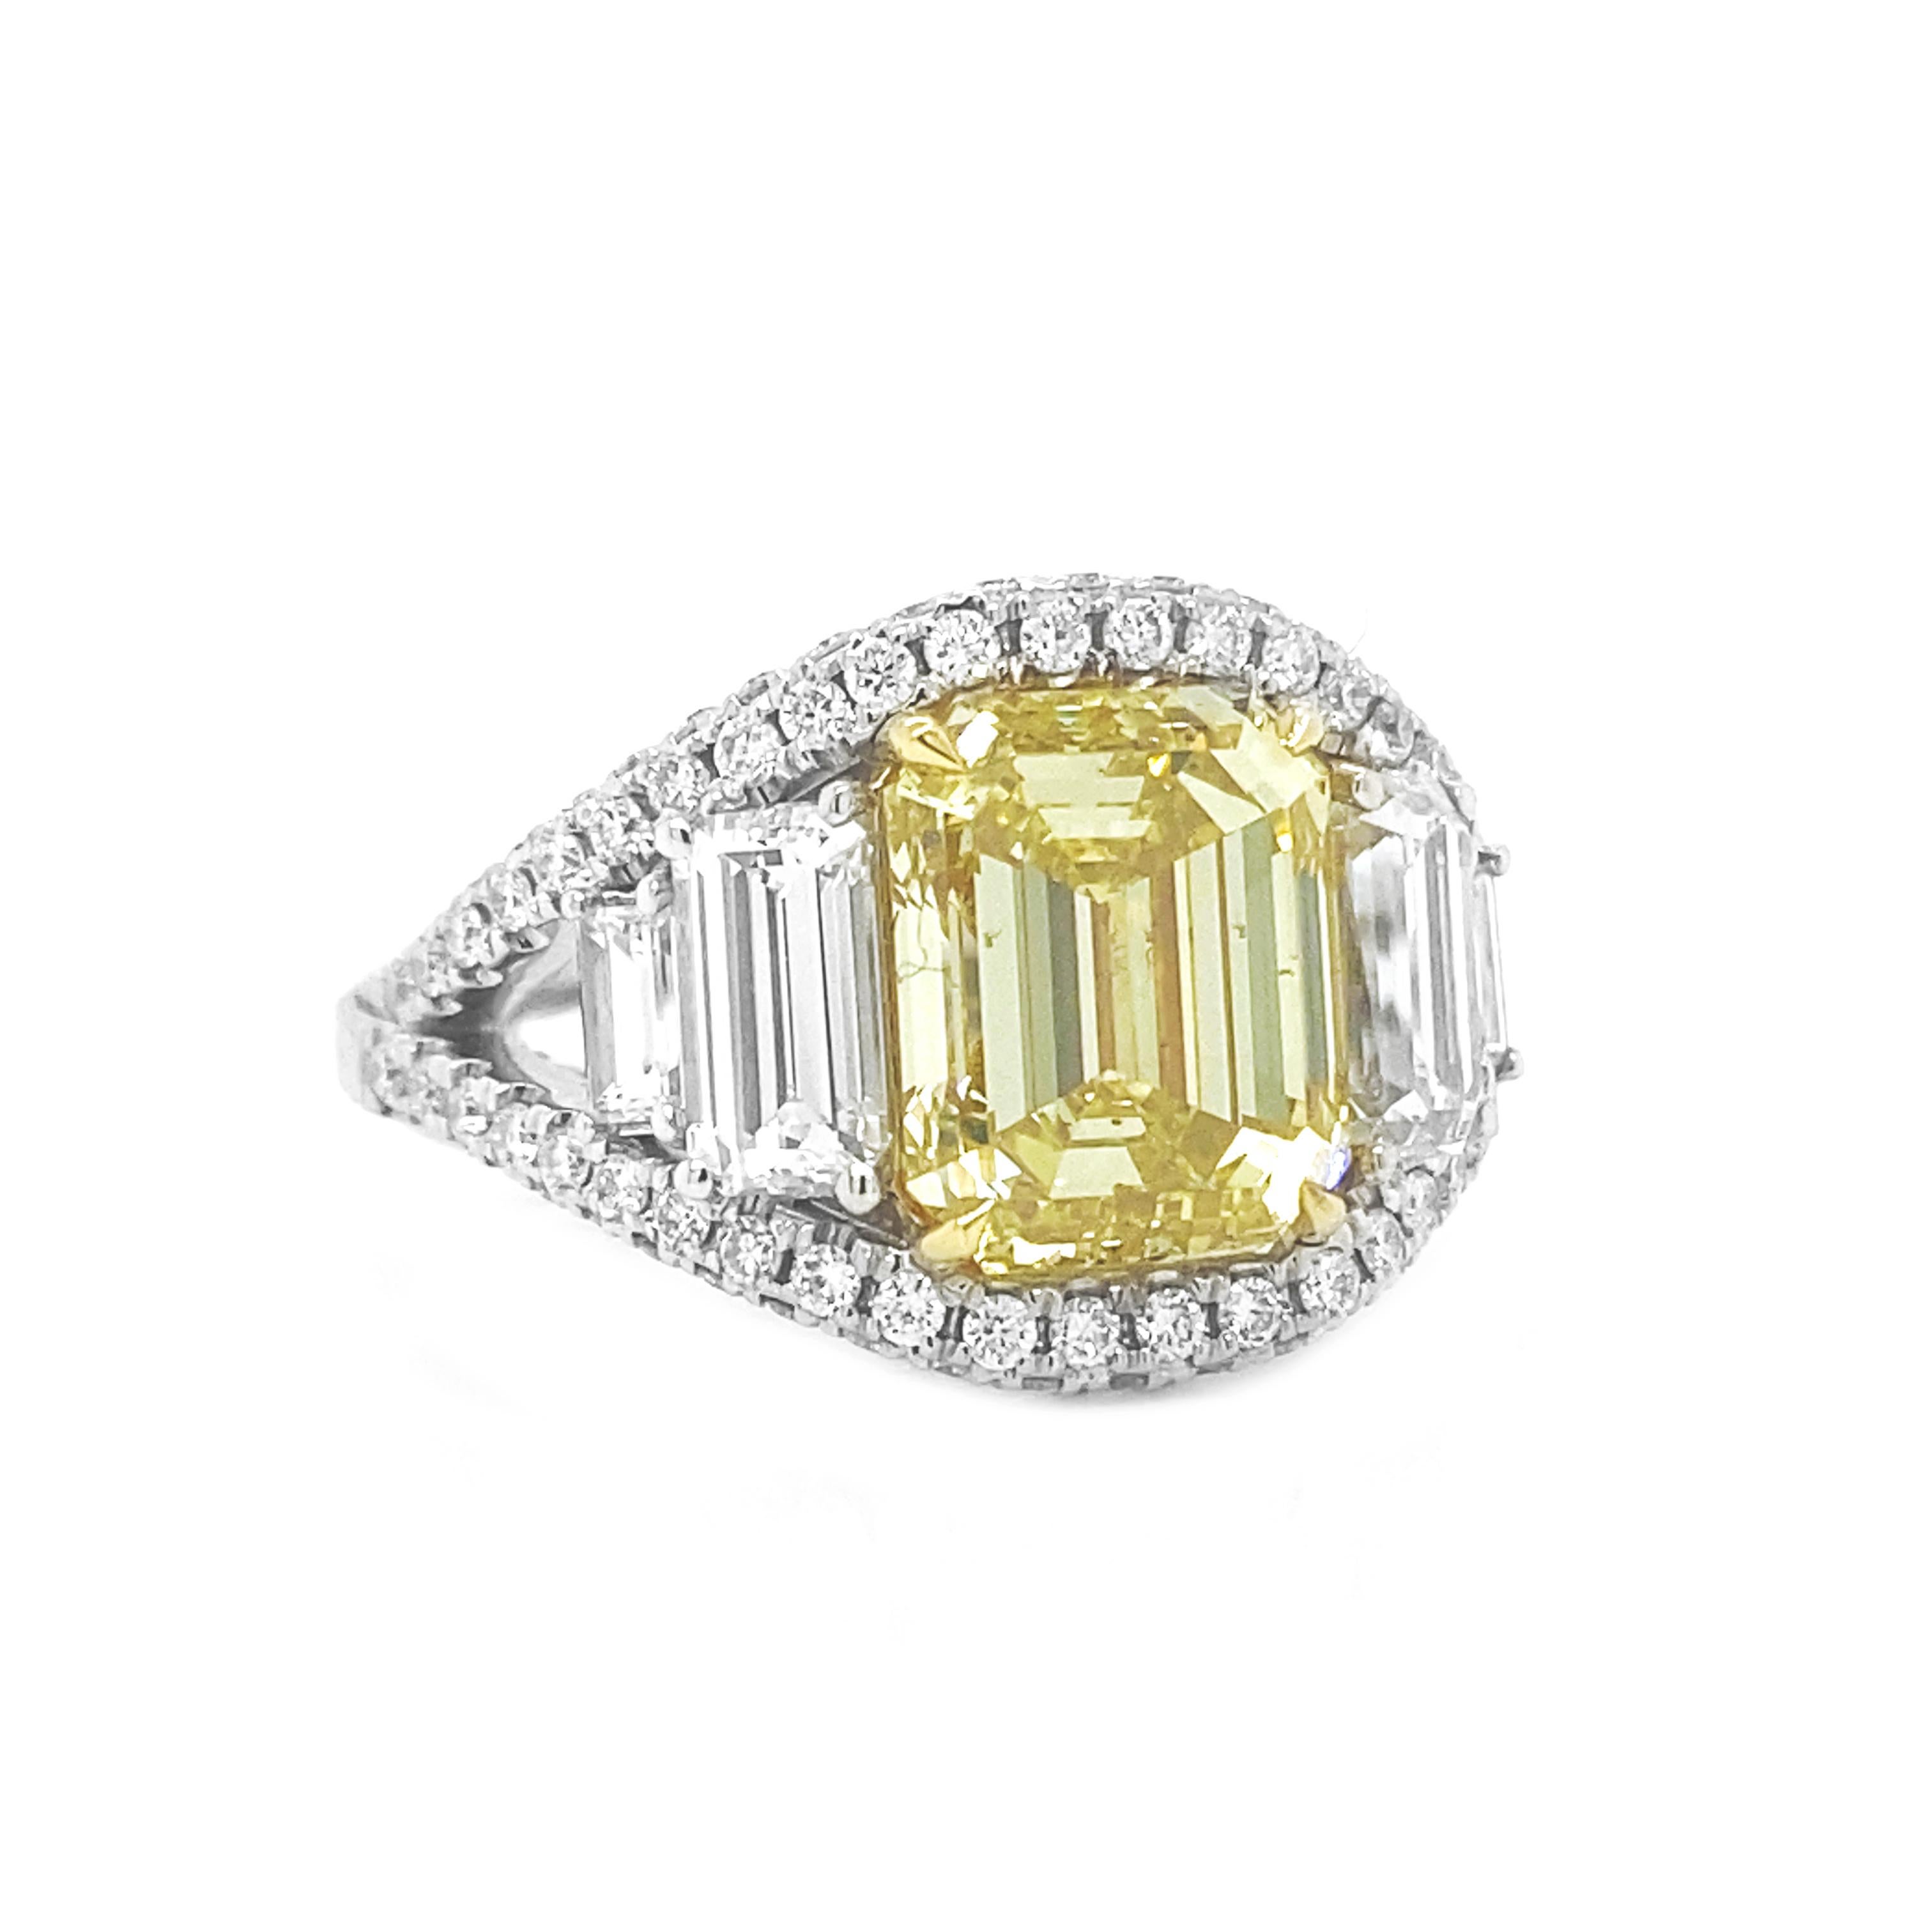 Exquisite 6,30 Karat Gesamtgewicht Natural Fancy Yellow Emerald GIA zertifiziert Diamond Cluster Ring - 18KT Gold

Beschreibung:
Treten Sie ein in den Luxus mit unserem exquisiten 6,30 Karat Gesamtgewicht natürlichen Fancy Yellow Emerald GIA